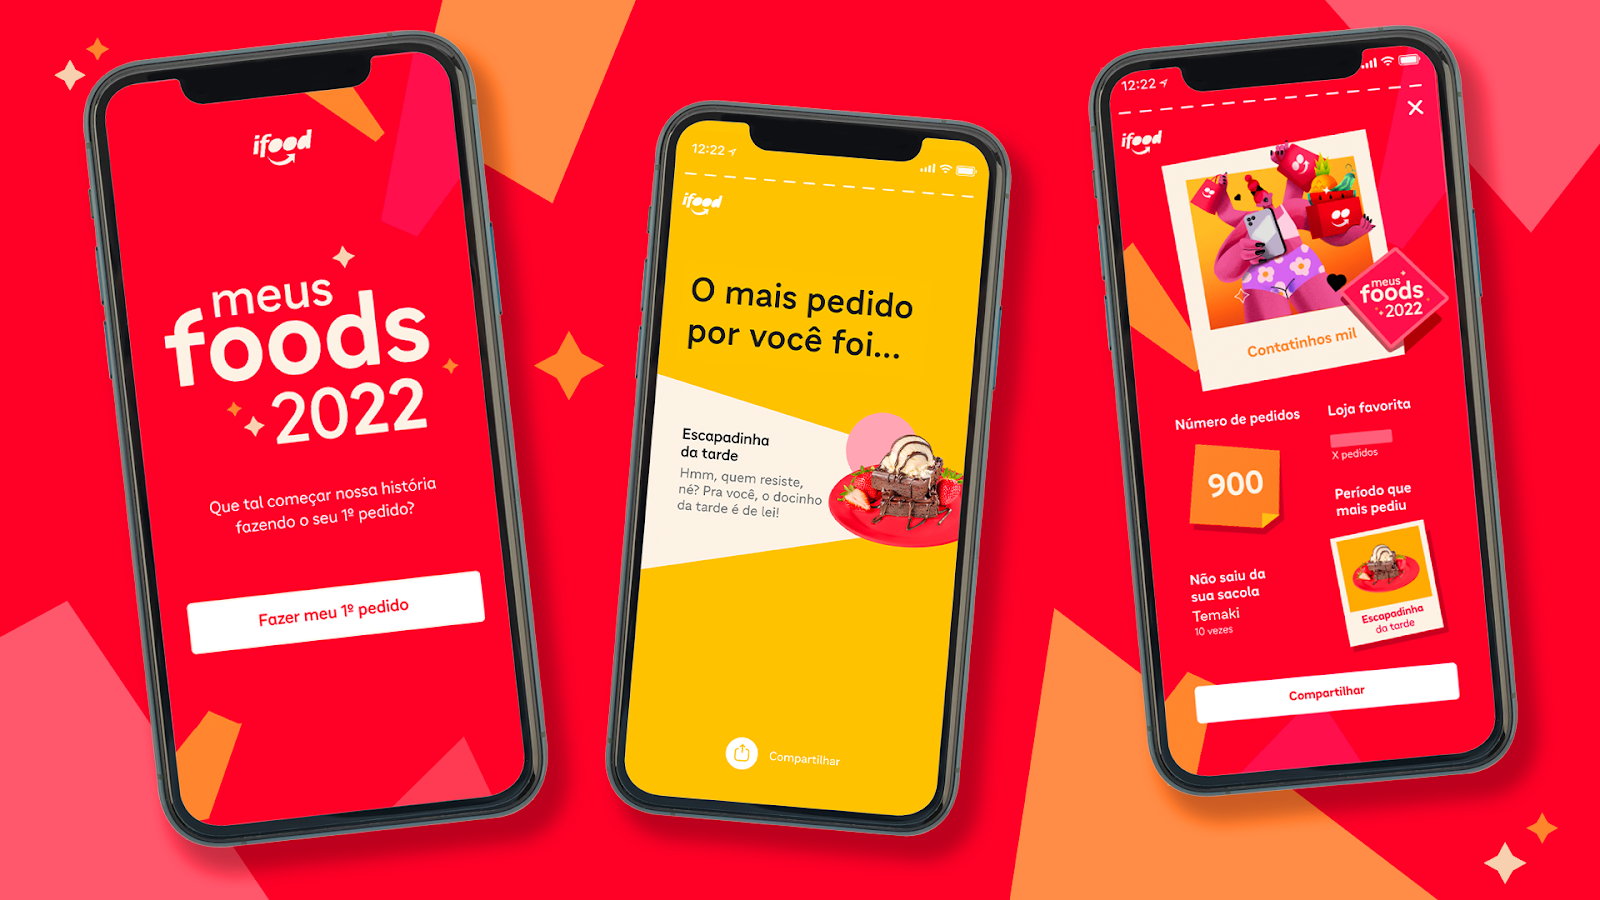 Meus Foods 2022 é uma forma de celebrar o ano dos clientes no aplicativo de maneira divertida. (Fonte: iFood/Divulgação)